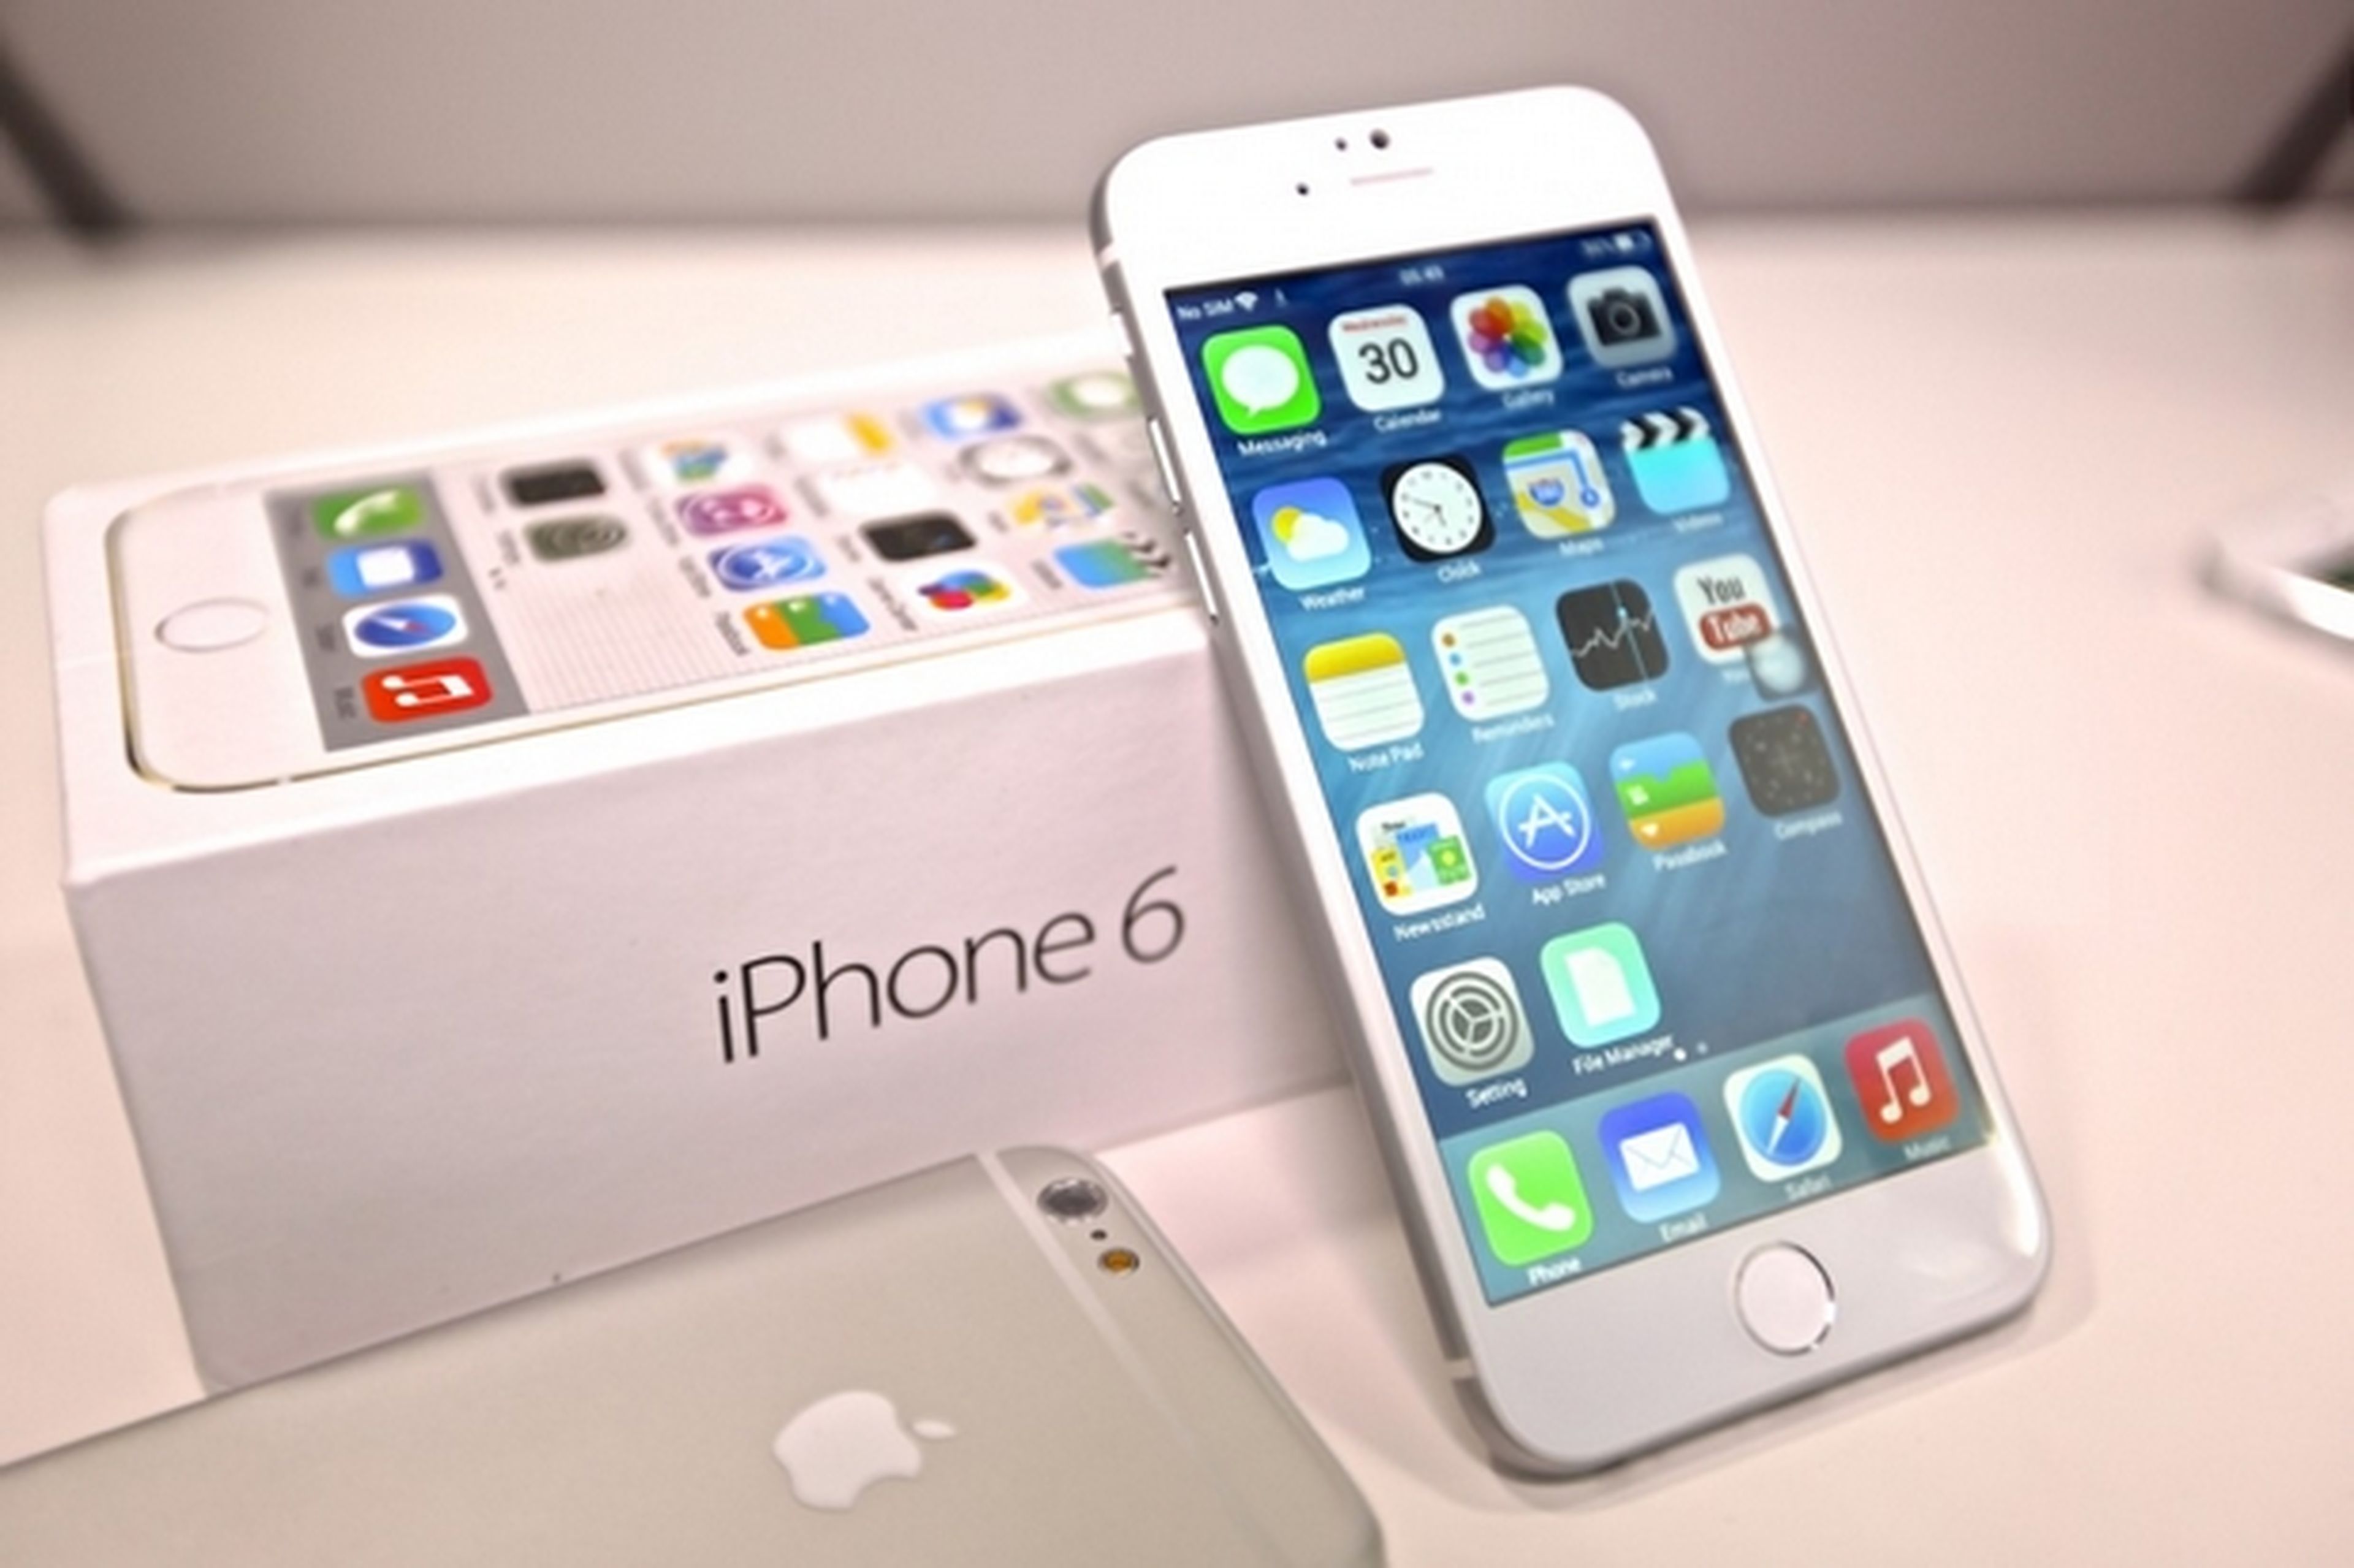 iPhone 6 iPhone 6 Plus baten récords de ventas en su lanzamiento